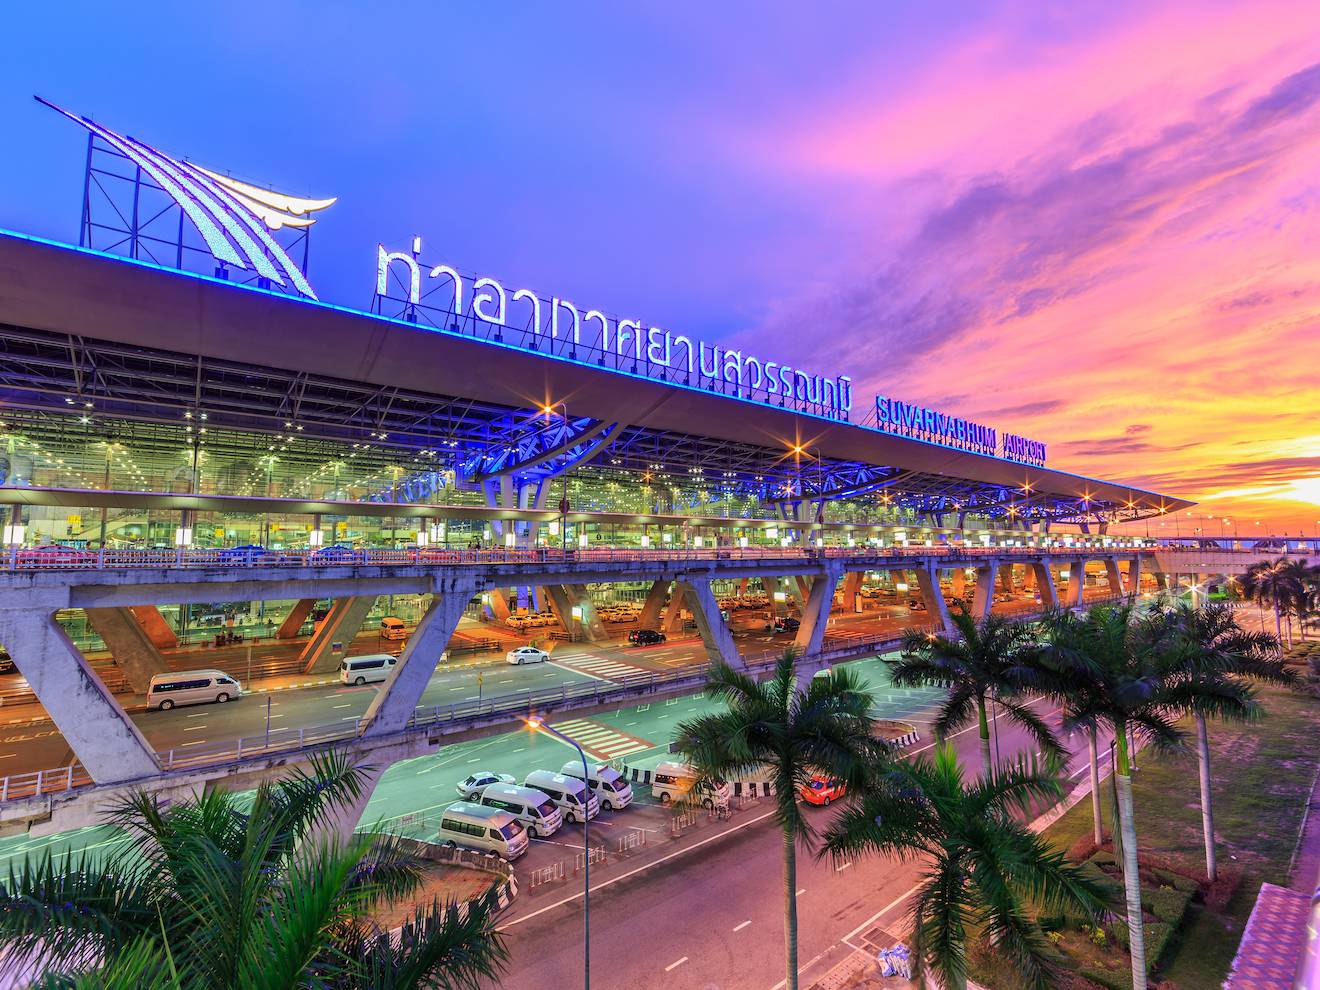 Аэропорт бангкока суварнабхуми где находится, схема аэропорта на русском, камера хранения, отель, такси